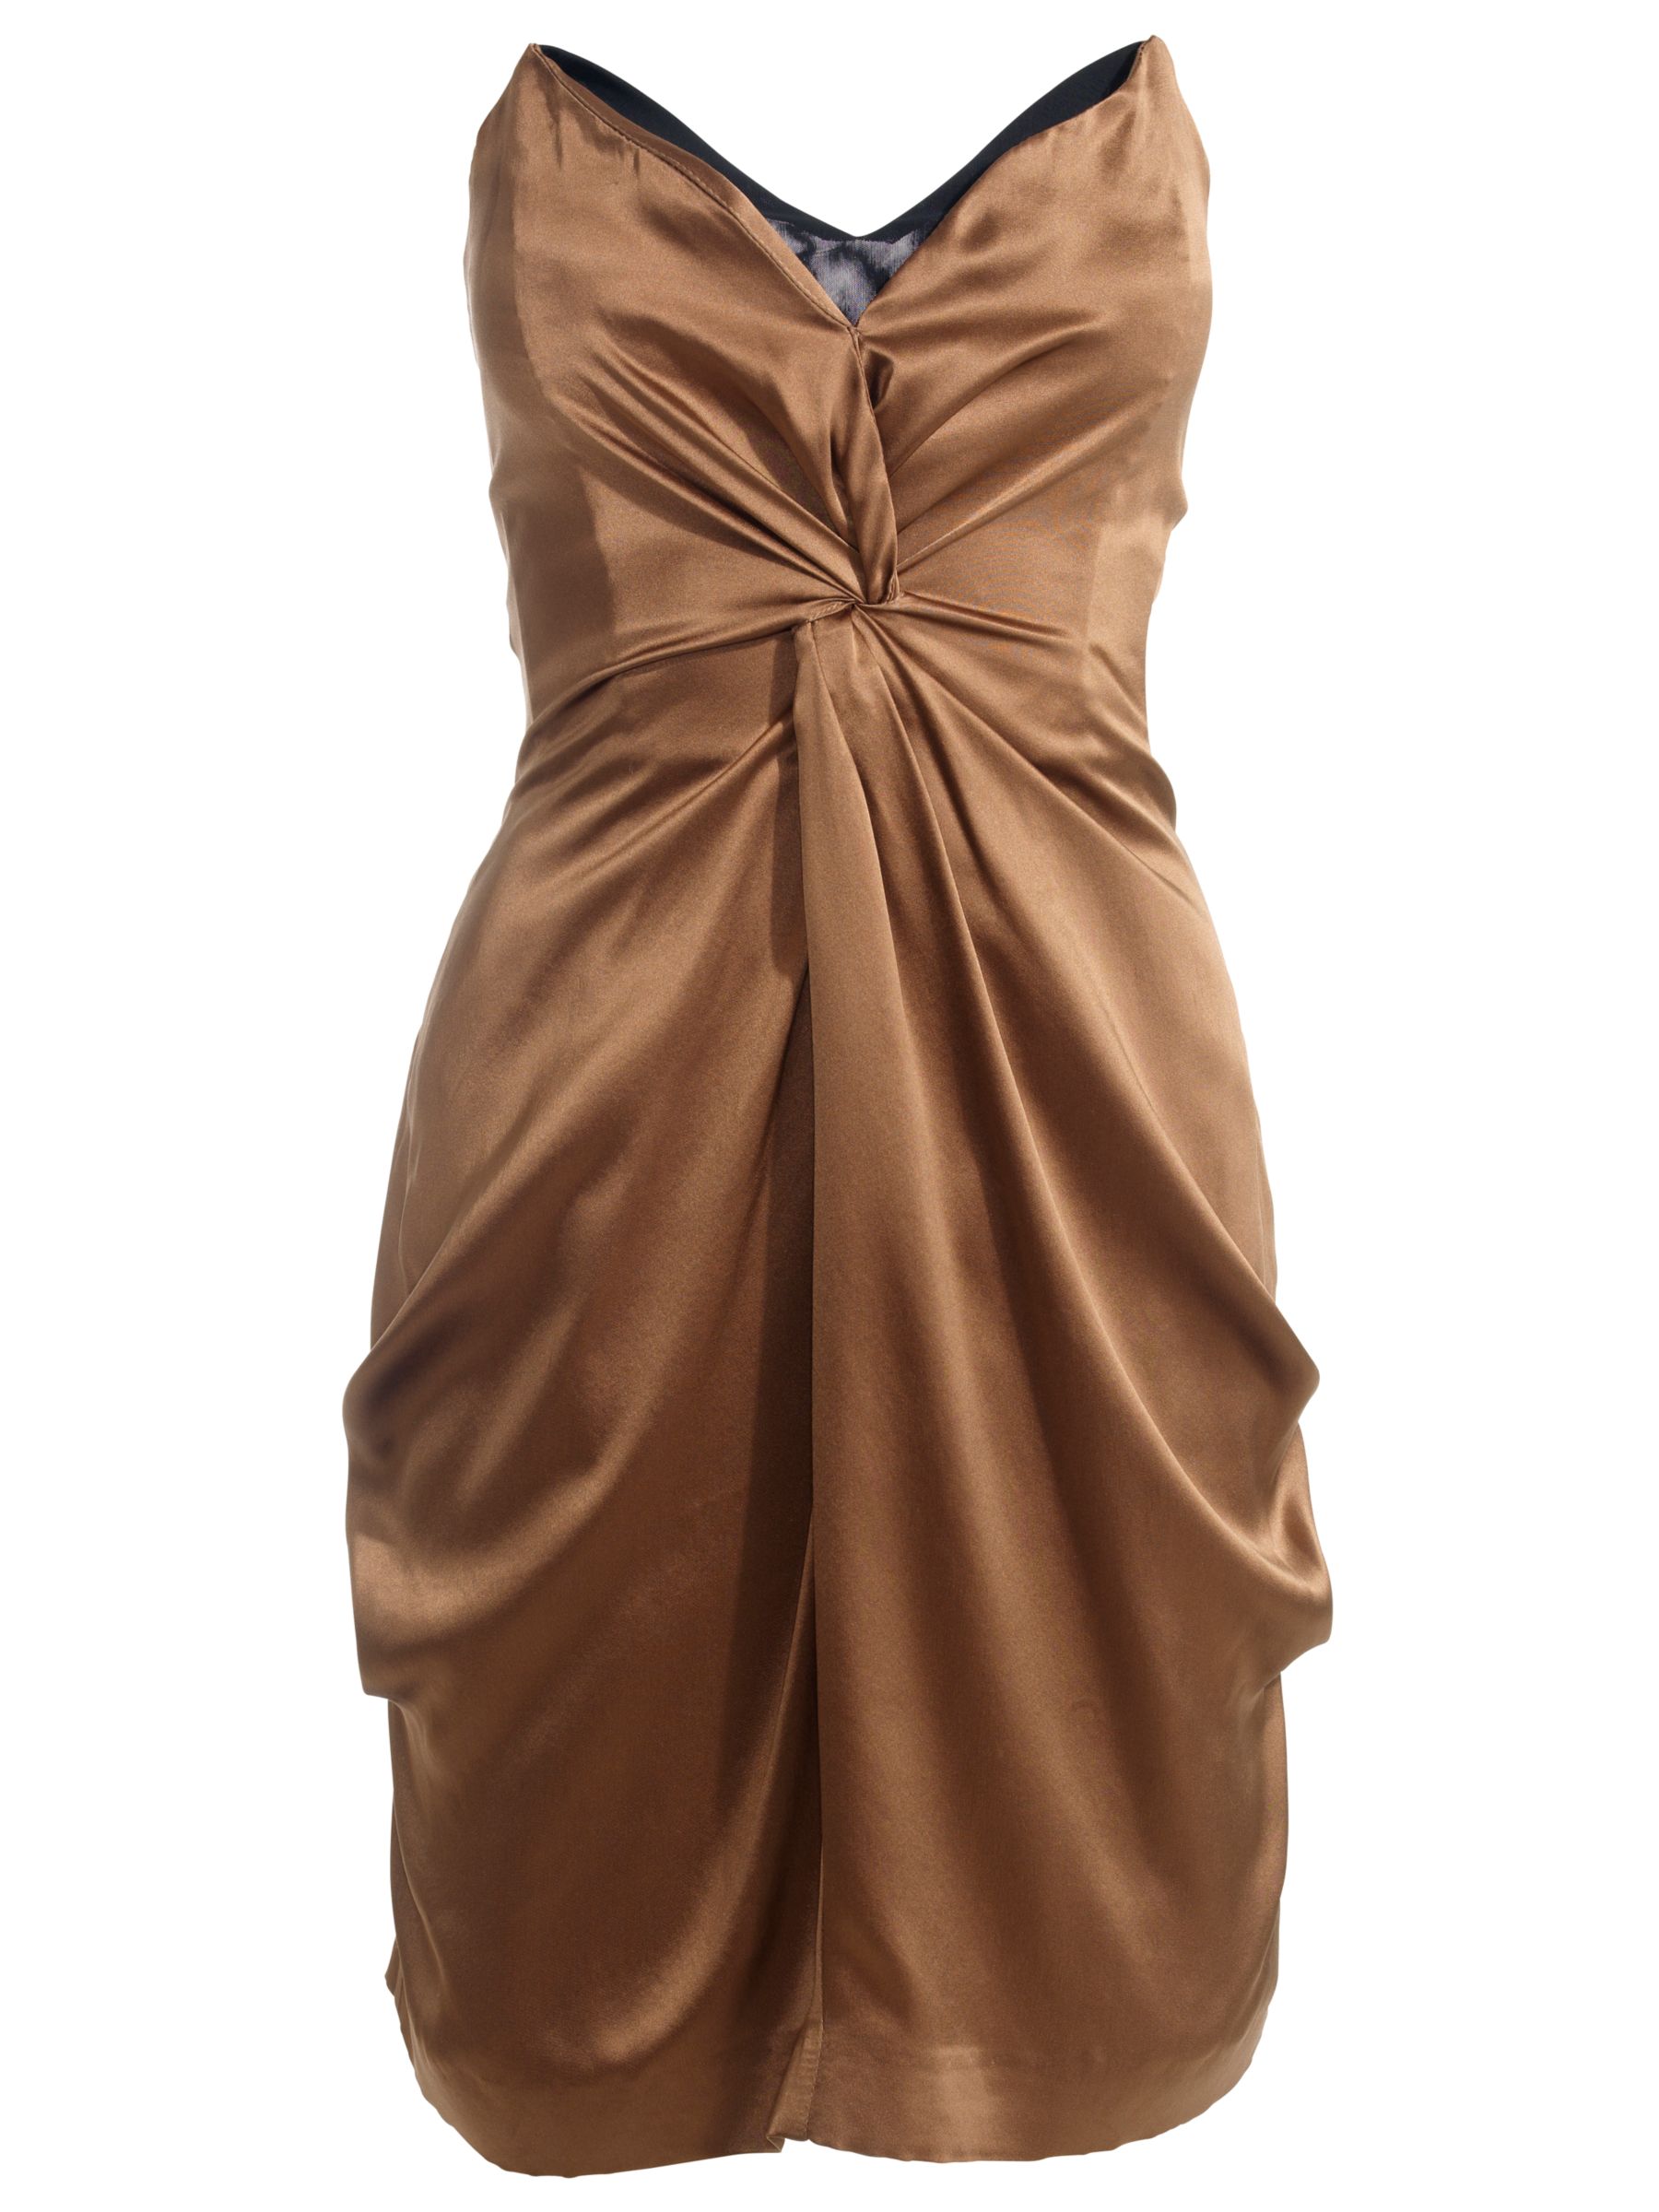 Reiss Courtney Corset Bustier Dress, Bronze at John Lewis